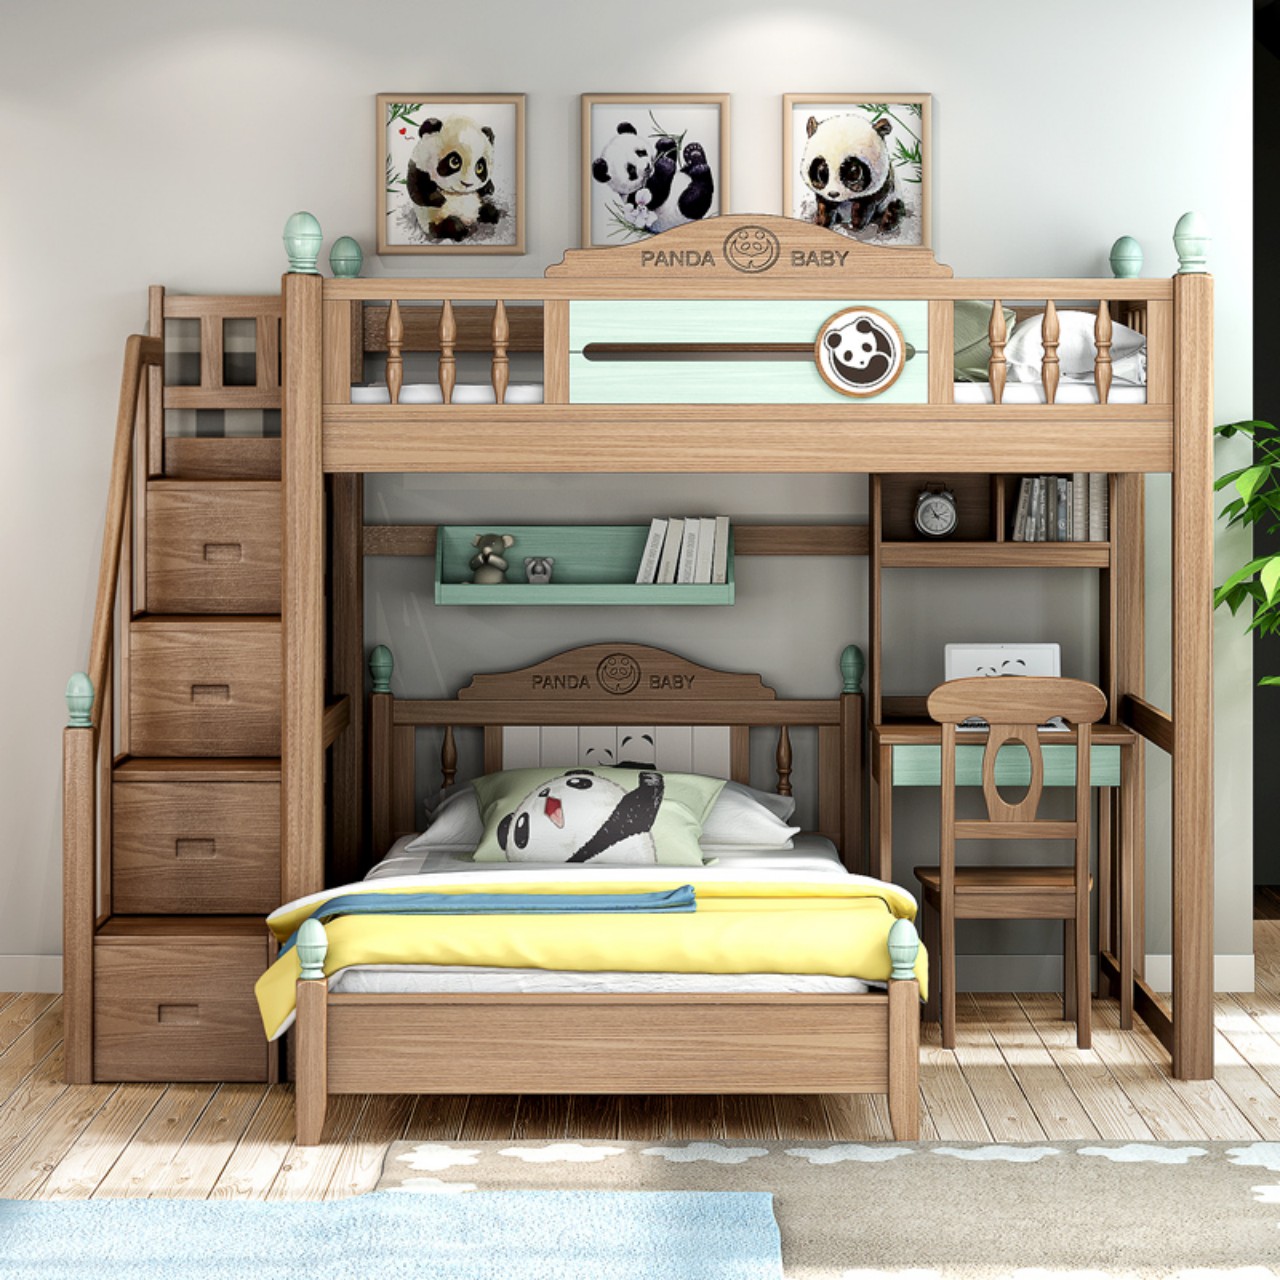 Mẫu giường tầng cho bé bằng gỗ tự nhiên có độ bền cao 